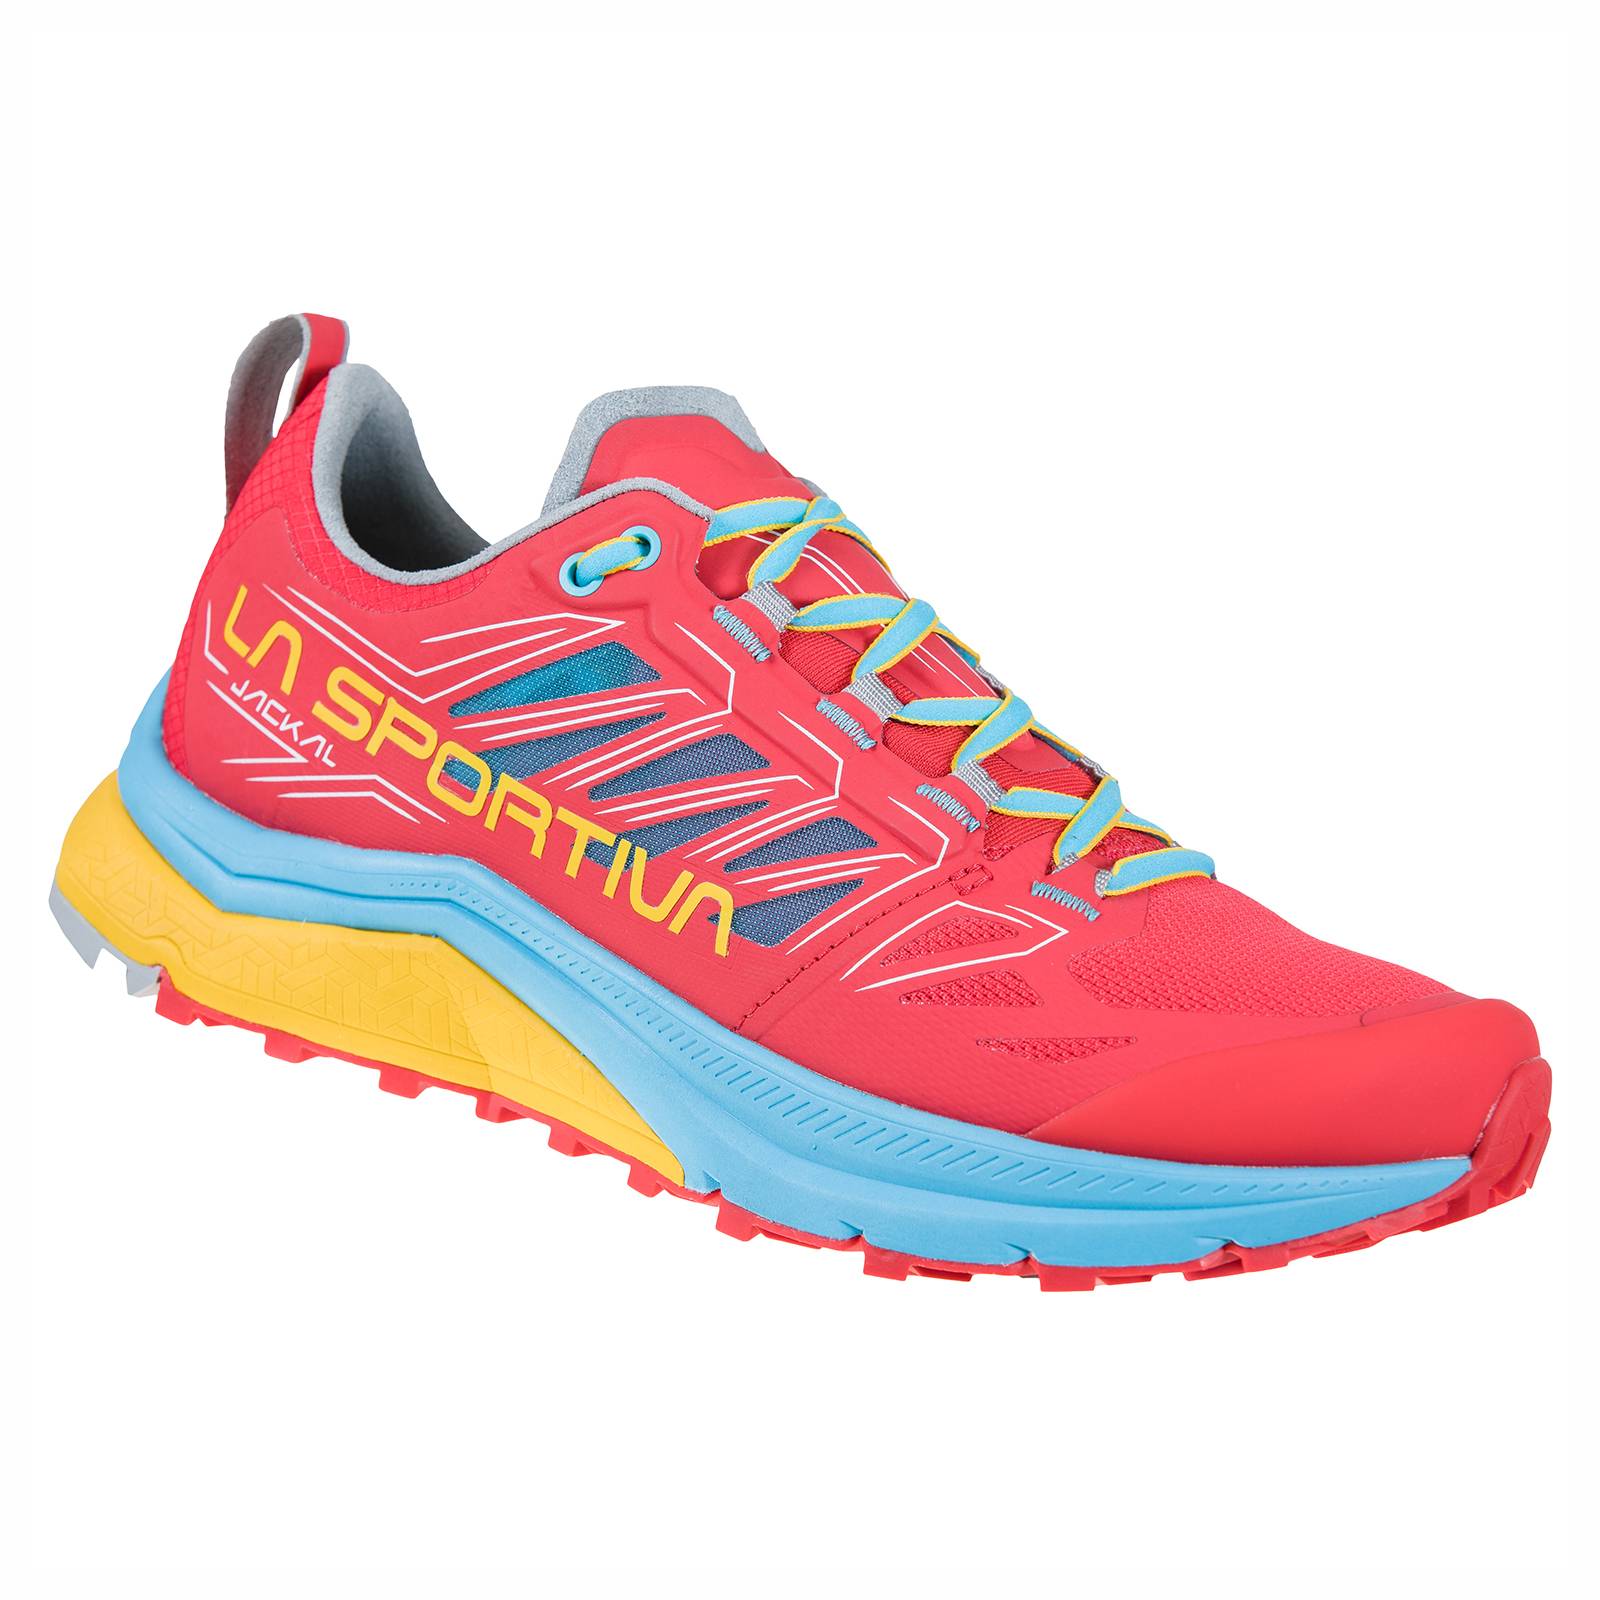 La Sportiva Jackal Damen Trail Running Schuhe pink